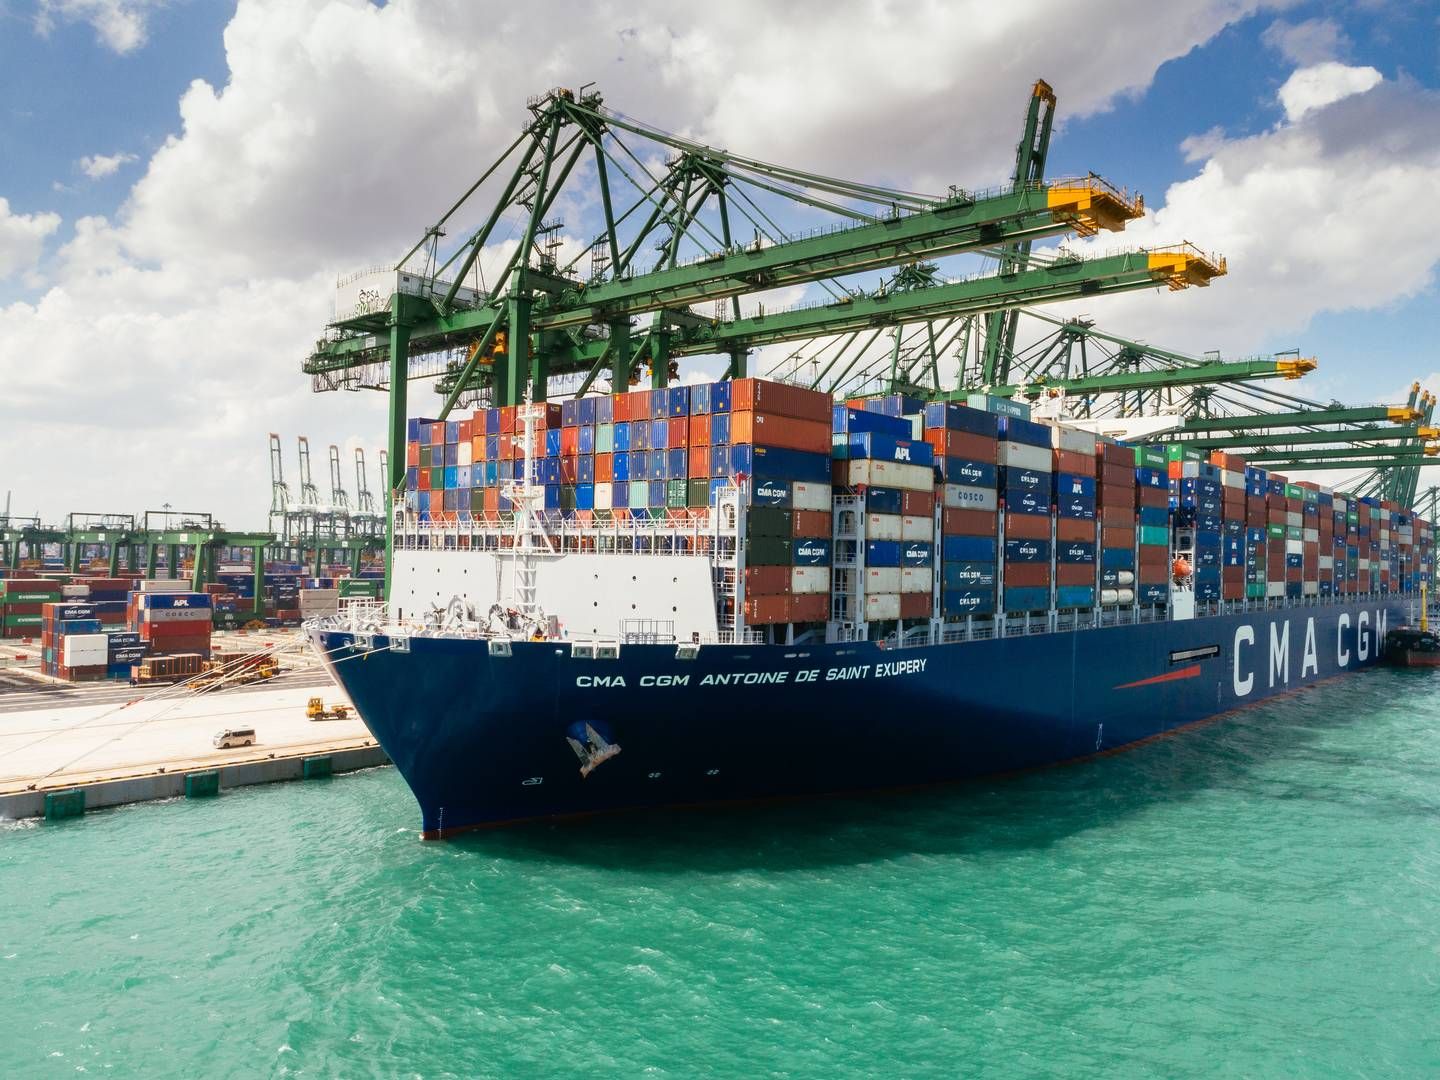 "Efter min mening kunne de to rederiers bæredygtighedspagt være kernen i et bredere repræsentativt organ for shippingindustrien," siger Philip Damas fra konsulenthuset Drewry. | Foto: Pr / Cma Cgm